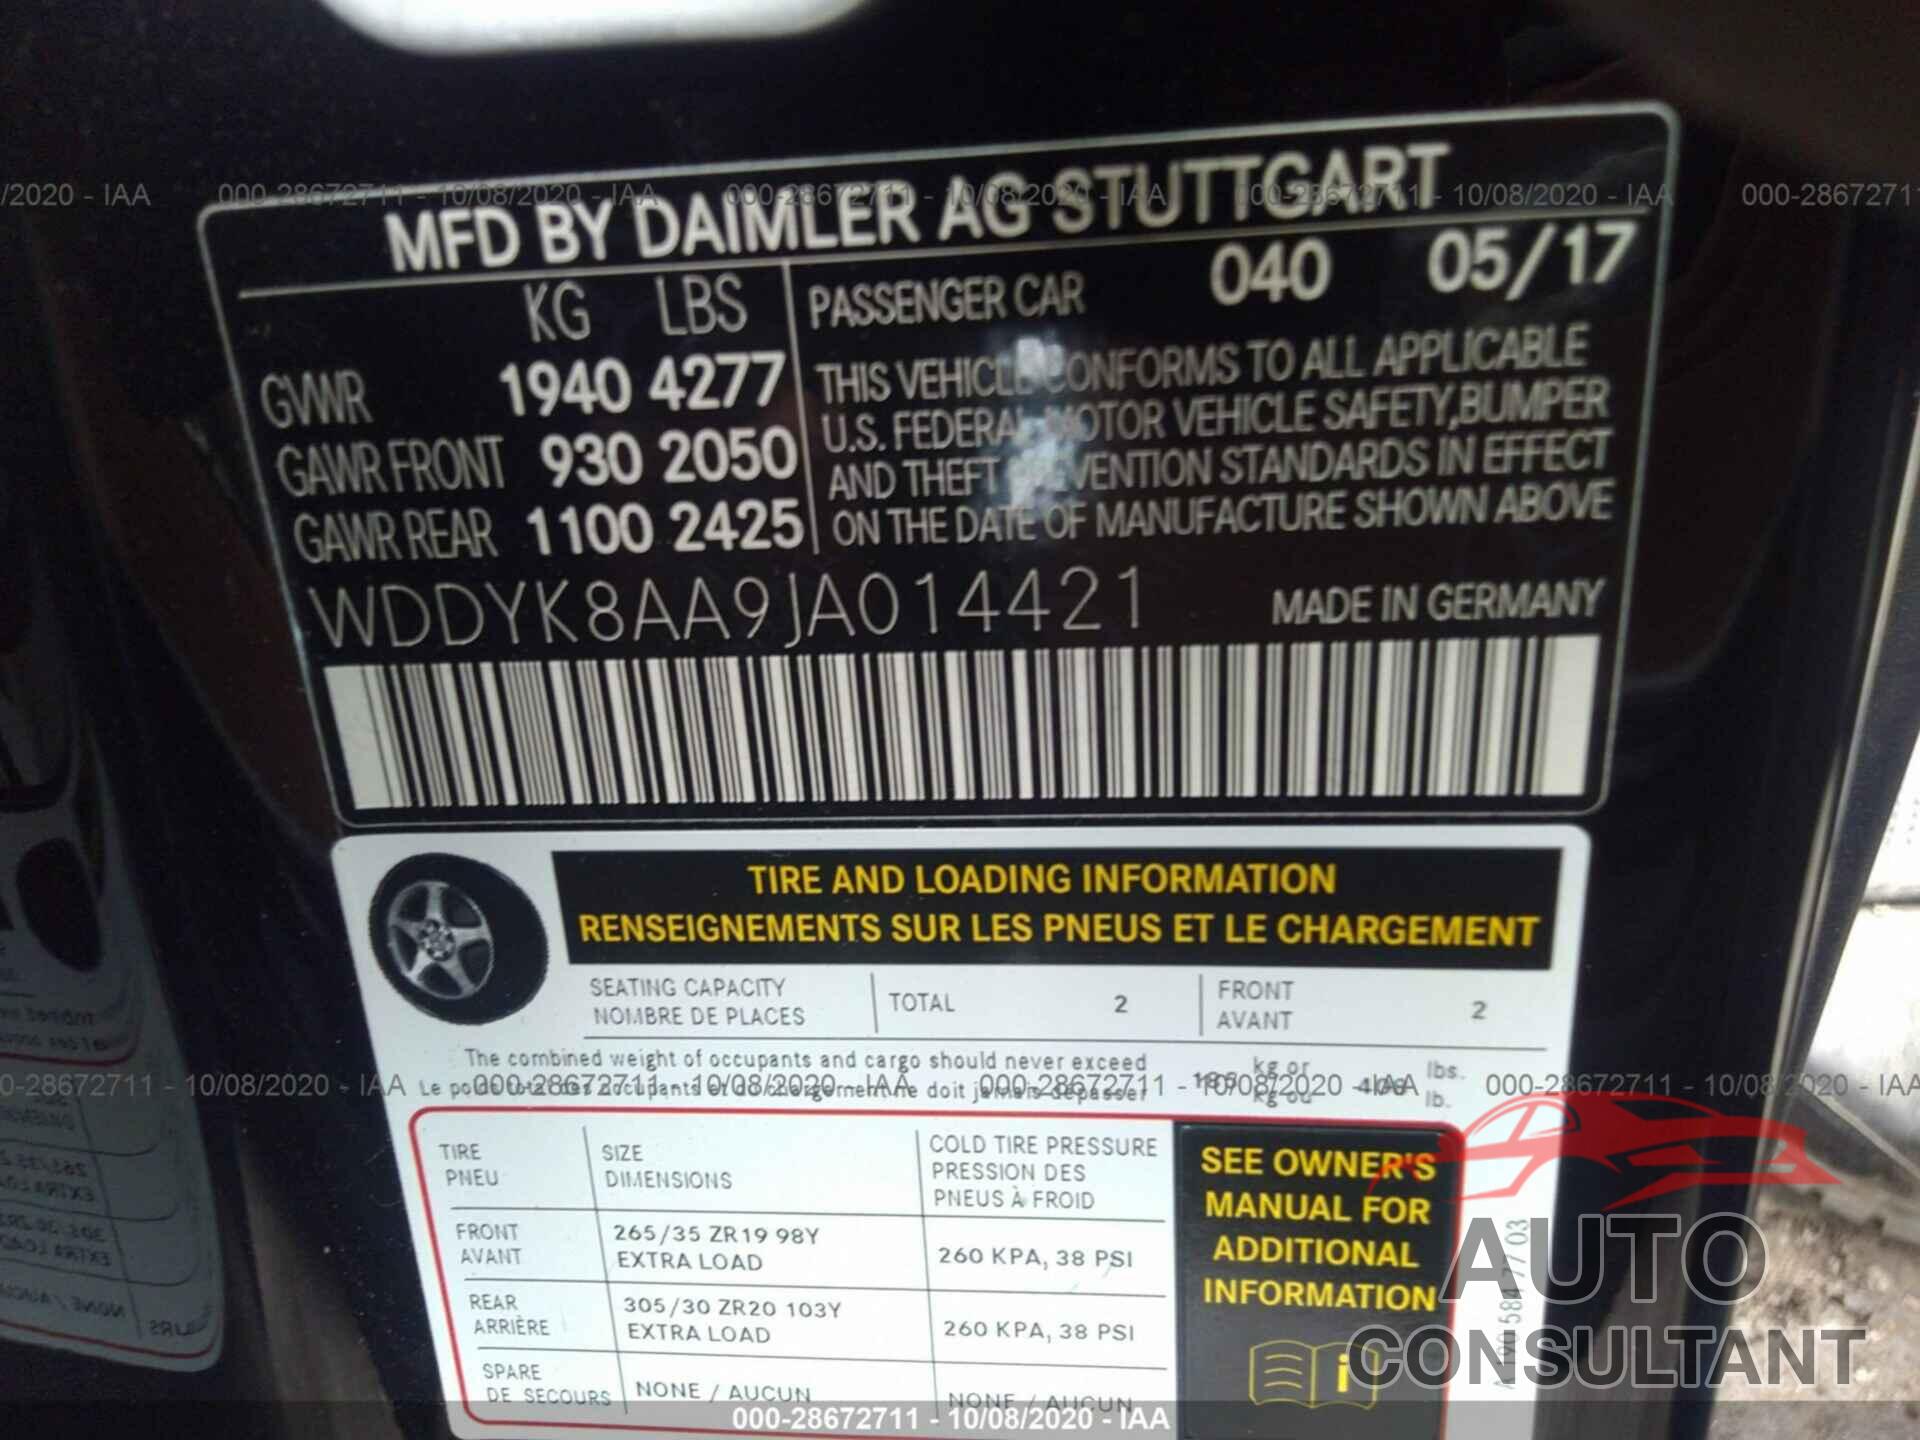 MERCEDES-BENZ AMG GT 2018 - WDDYK8AA9JA014421